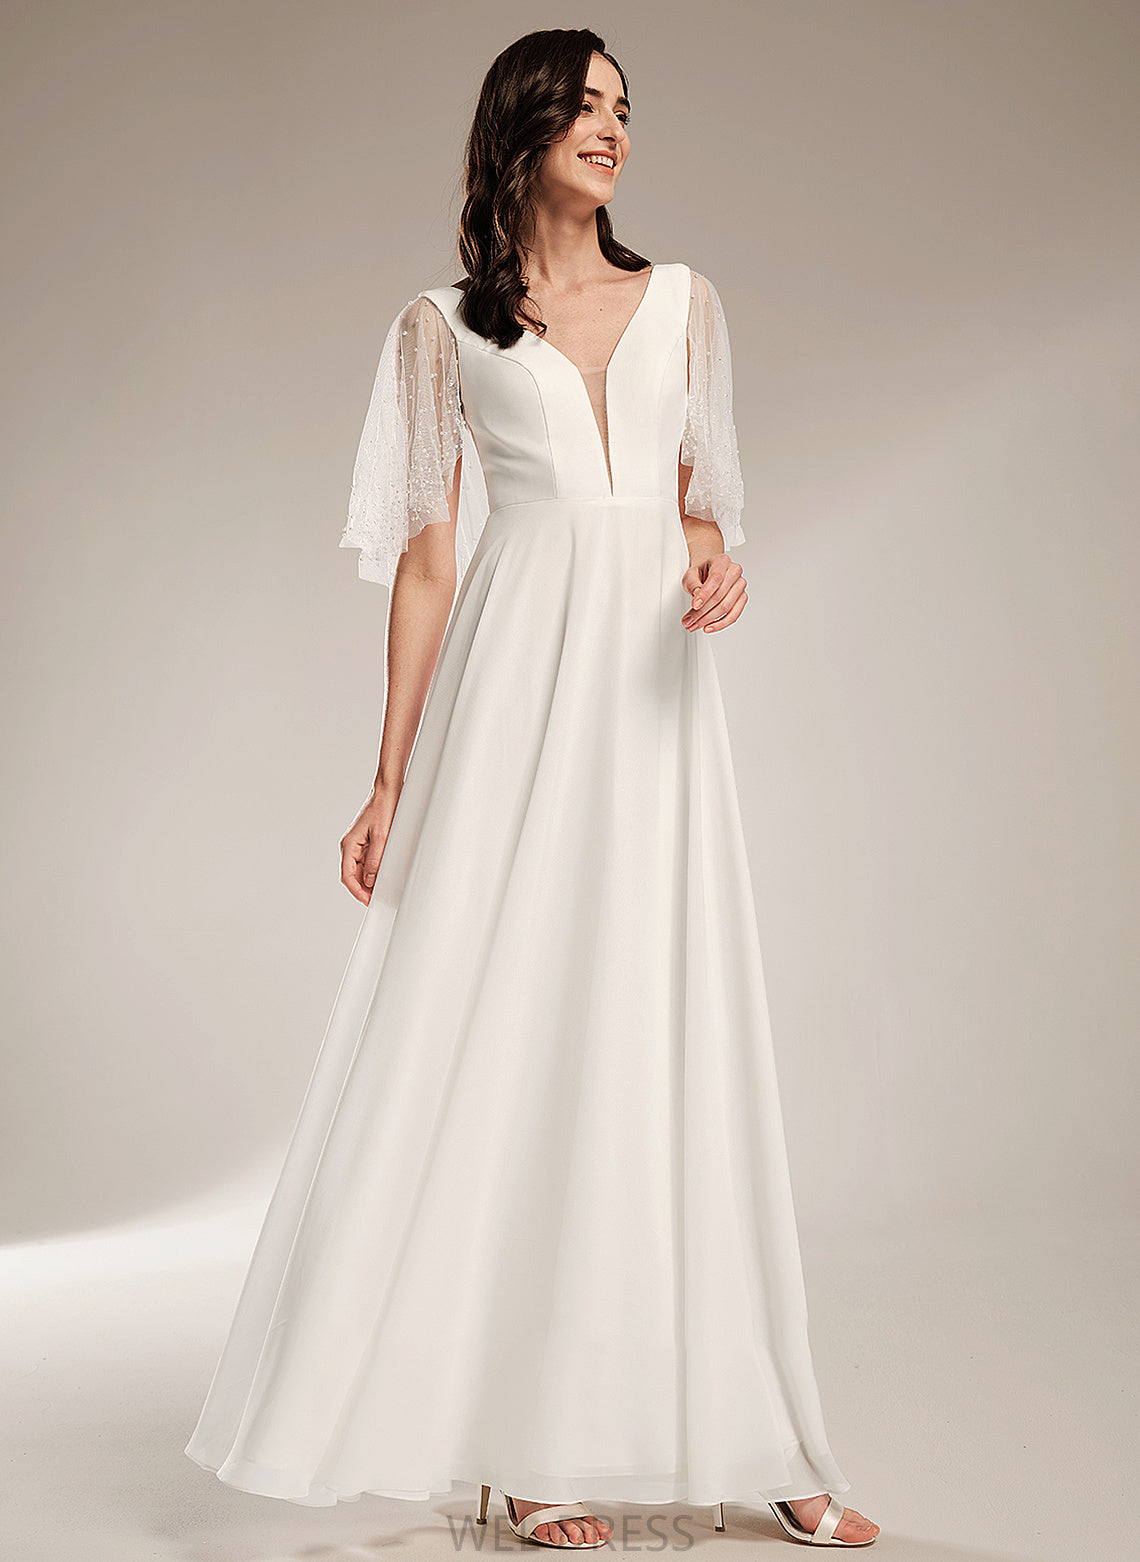 Wedding With A-Line Ciara V-neck Dress Beading Floor-Length Wedding Dresses